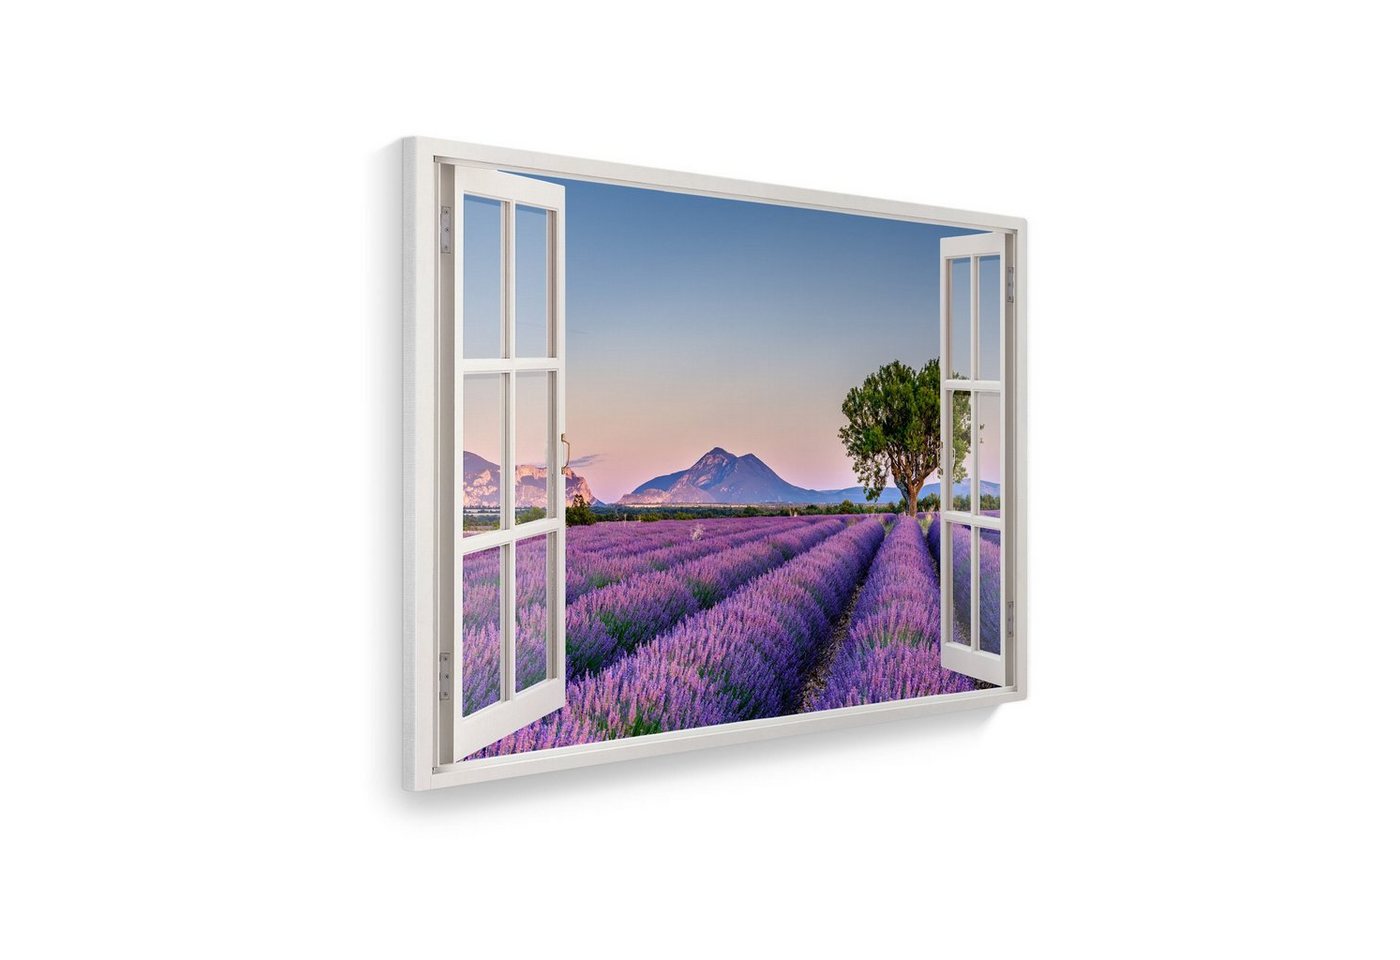 WallSpirit Leinwandbild Fenster mit Aussicht", Lavendelfeld, Leinwandbild geeignet für alle Wohnbereiche" von WallSpirit